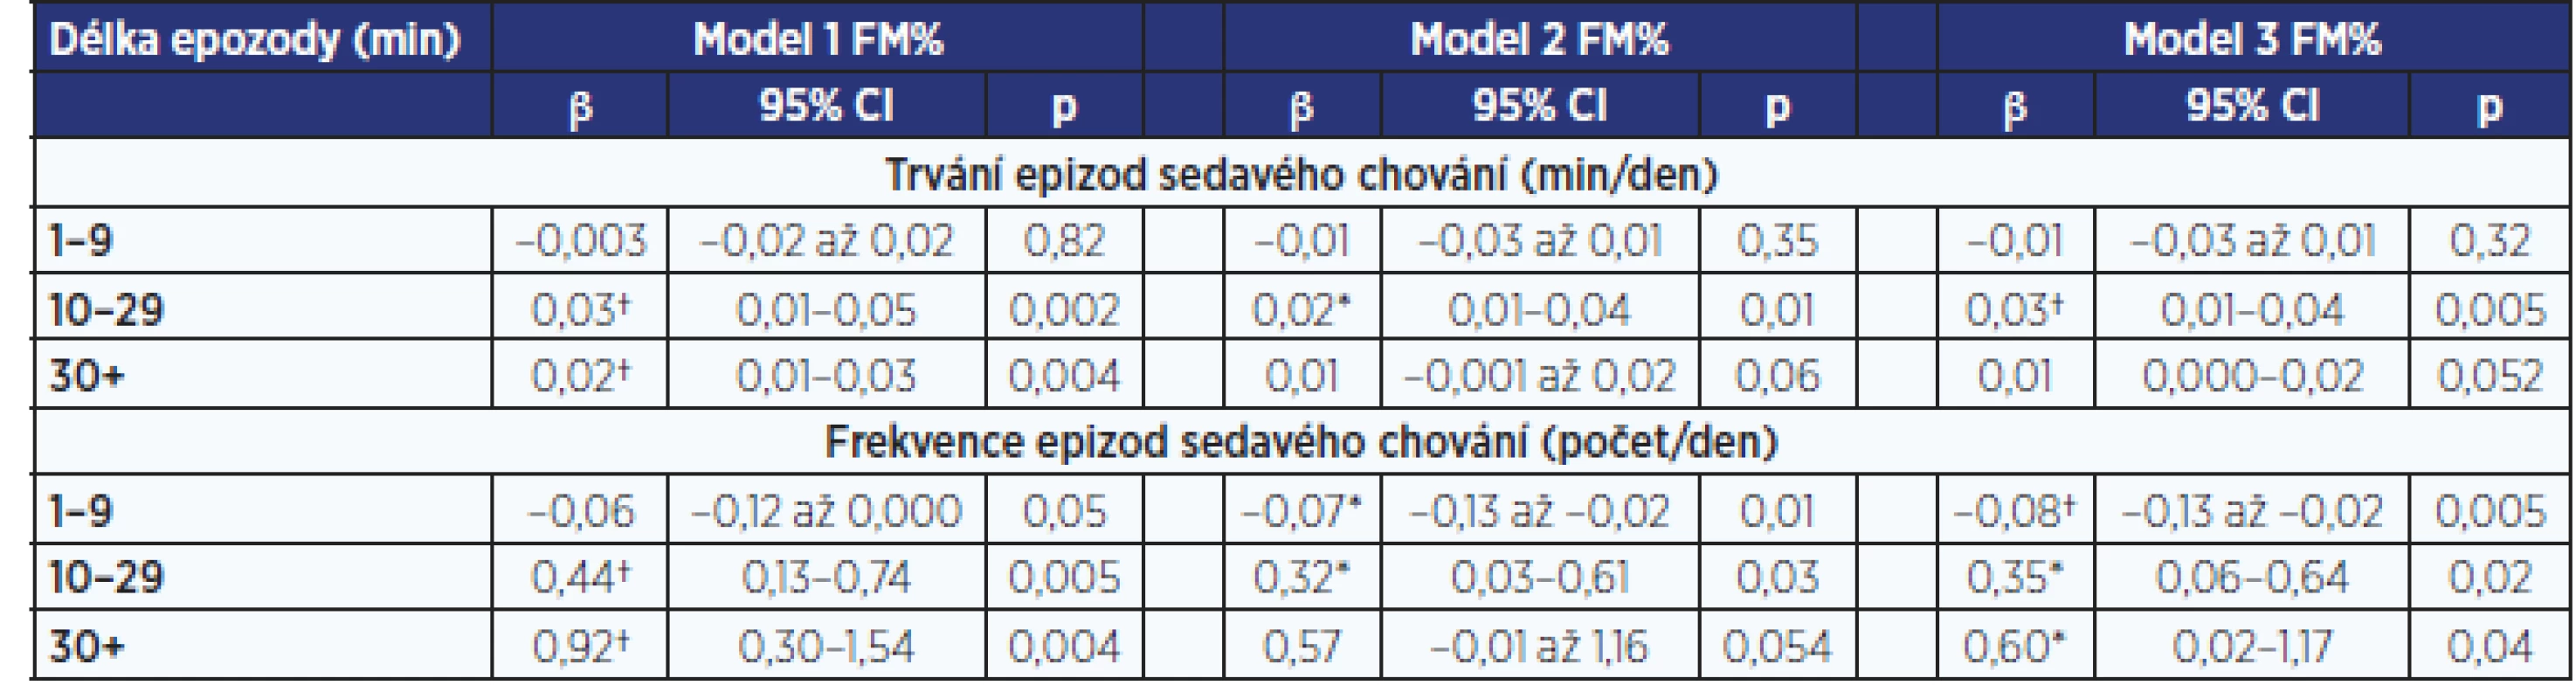 Vztah mezi FM% a trváním a frekvencí epizod sedavého chování